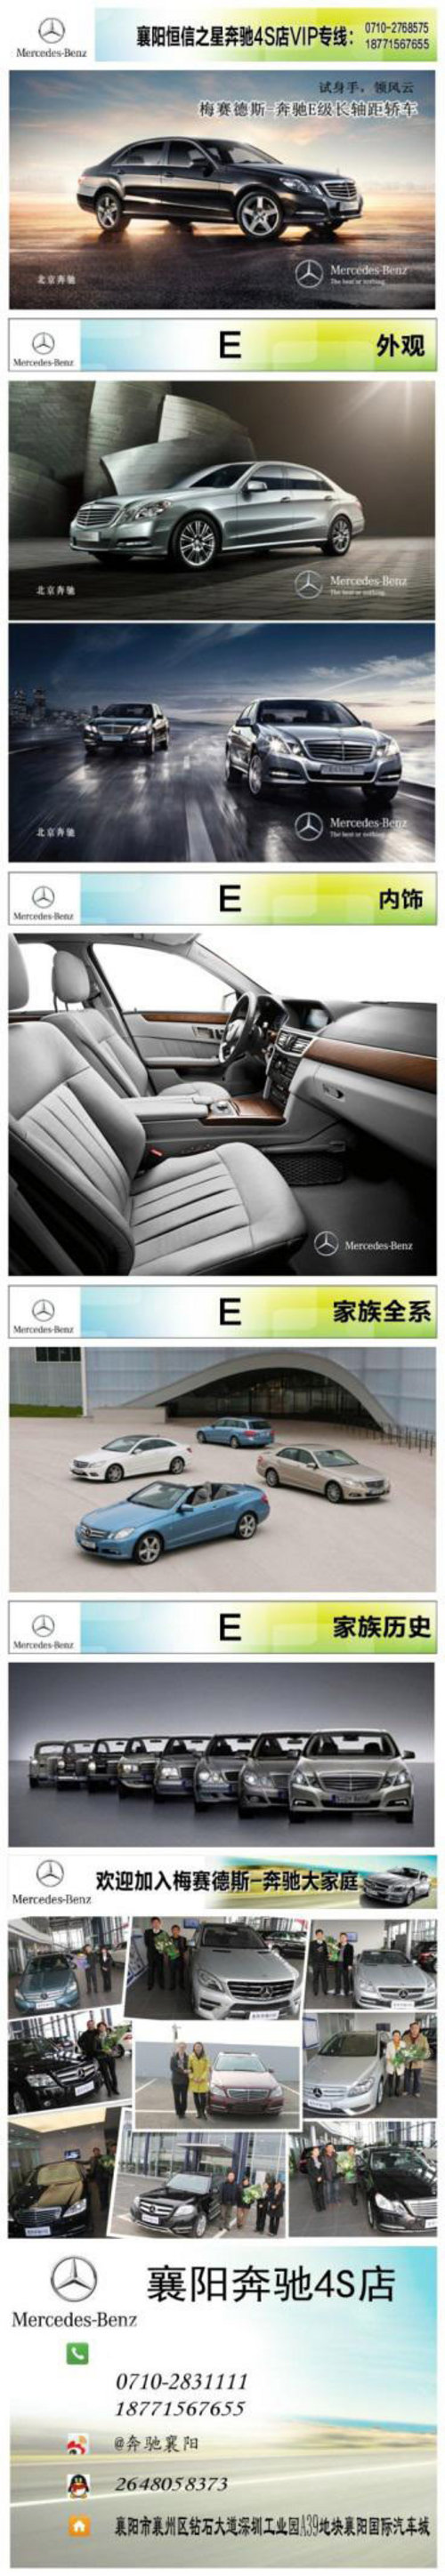 襄阳奔驰2014款全新E级轿车品鉴会